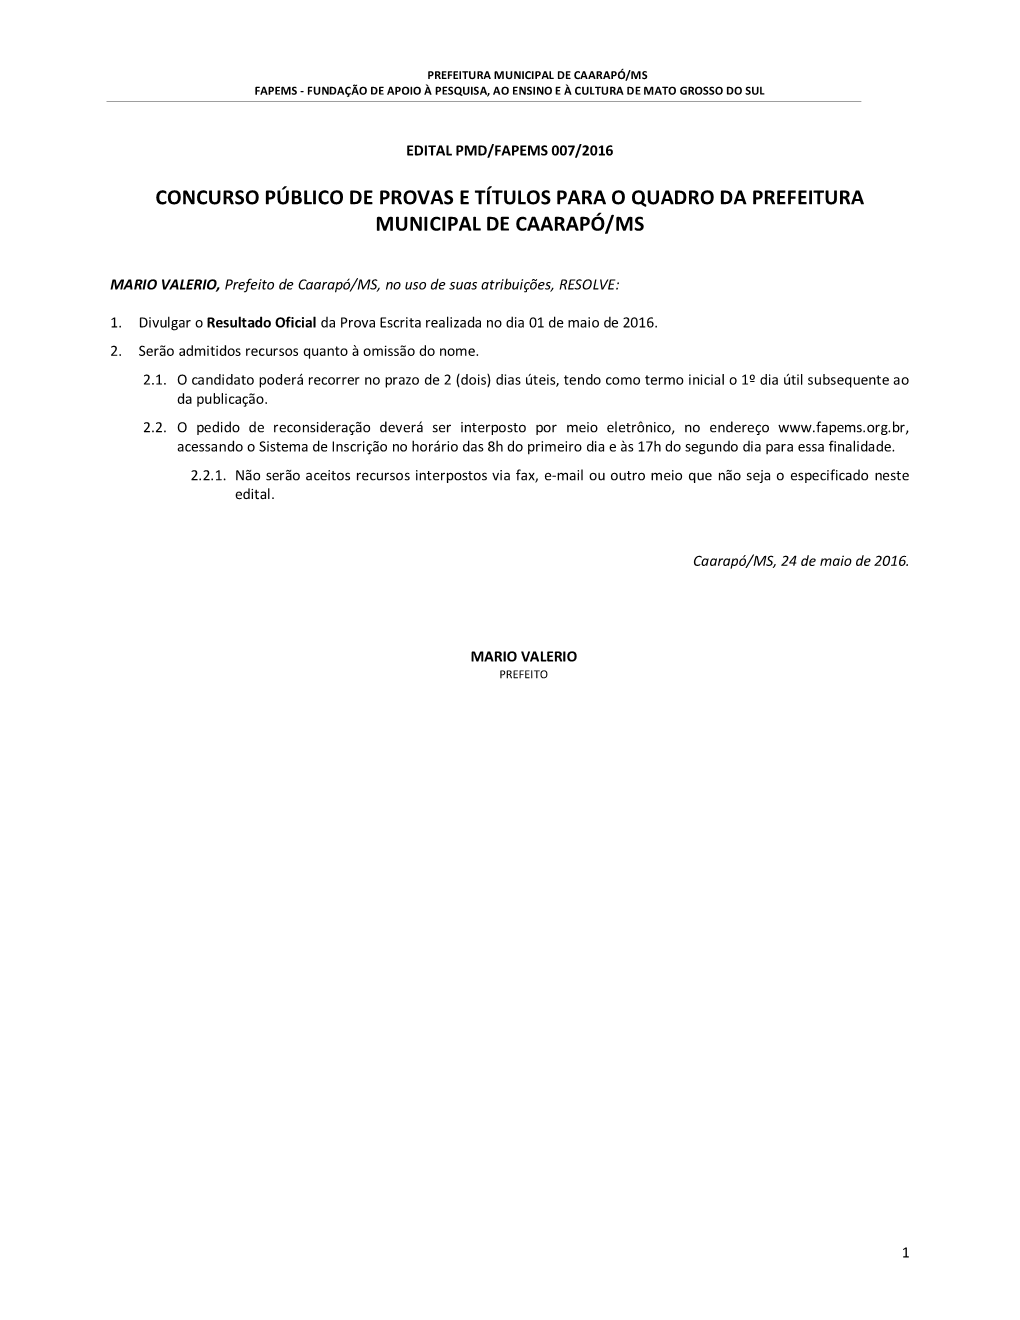 Concurso Público De Provas E Títulos Para O Quadro Da Prefeitura Municipal De Caarapó/Ms